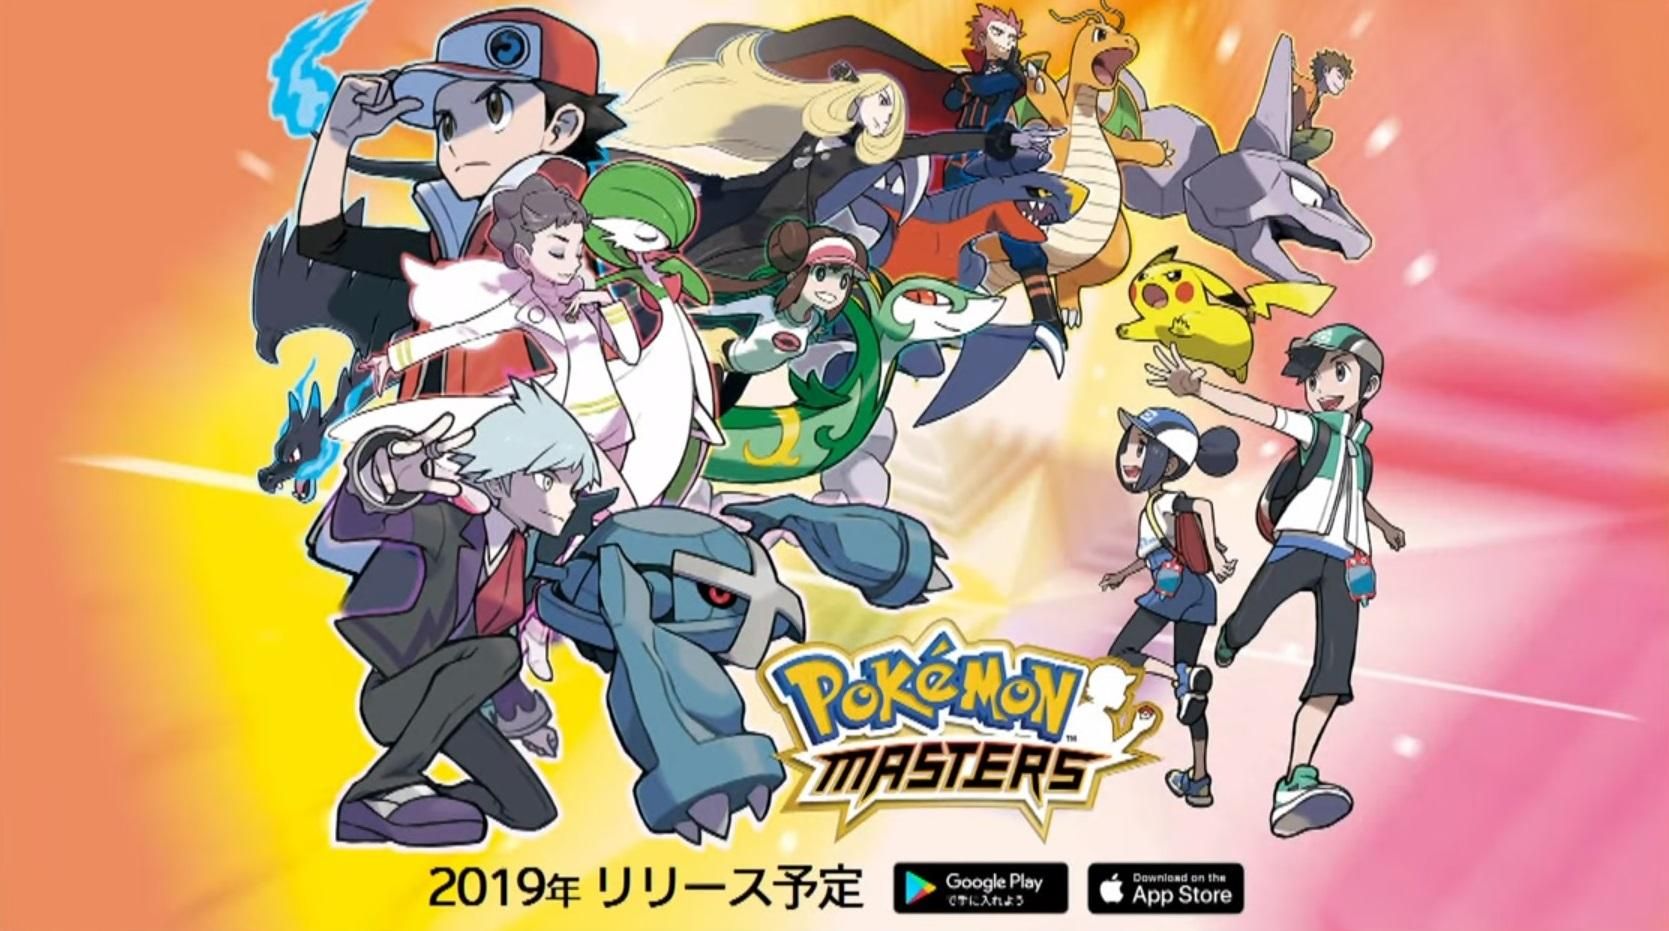 สายเกลือเตรียมพร้อม.. Pokémon Masters เตรียมเปิดให้เล่นบน Android และ iOS เน้นระบบ “กาชา” สุ่มโปเกมอนเป็นหลัก